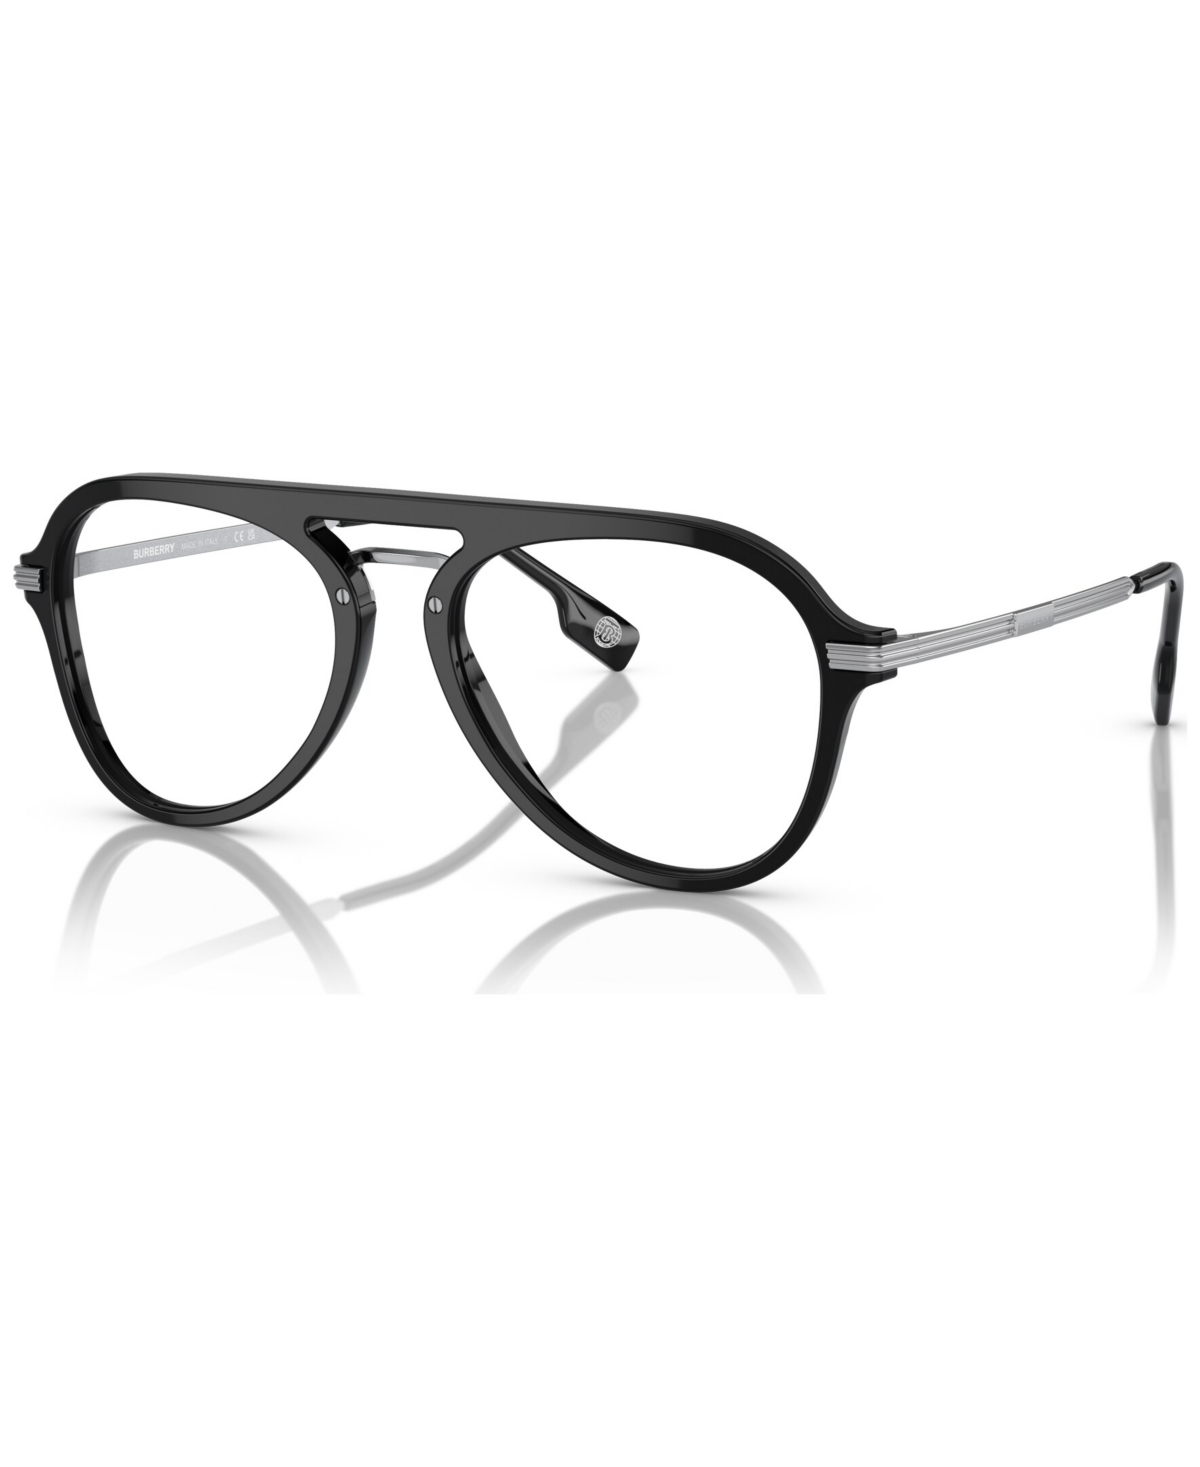 Men's Pilot Eyeglasses, BE2377 53 - Black